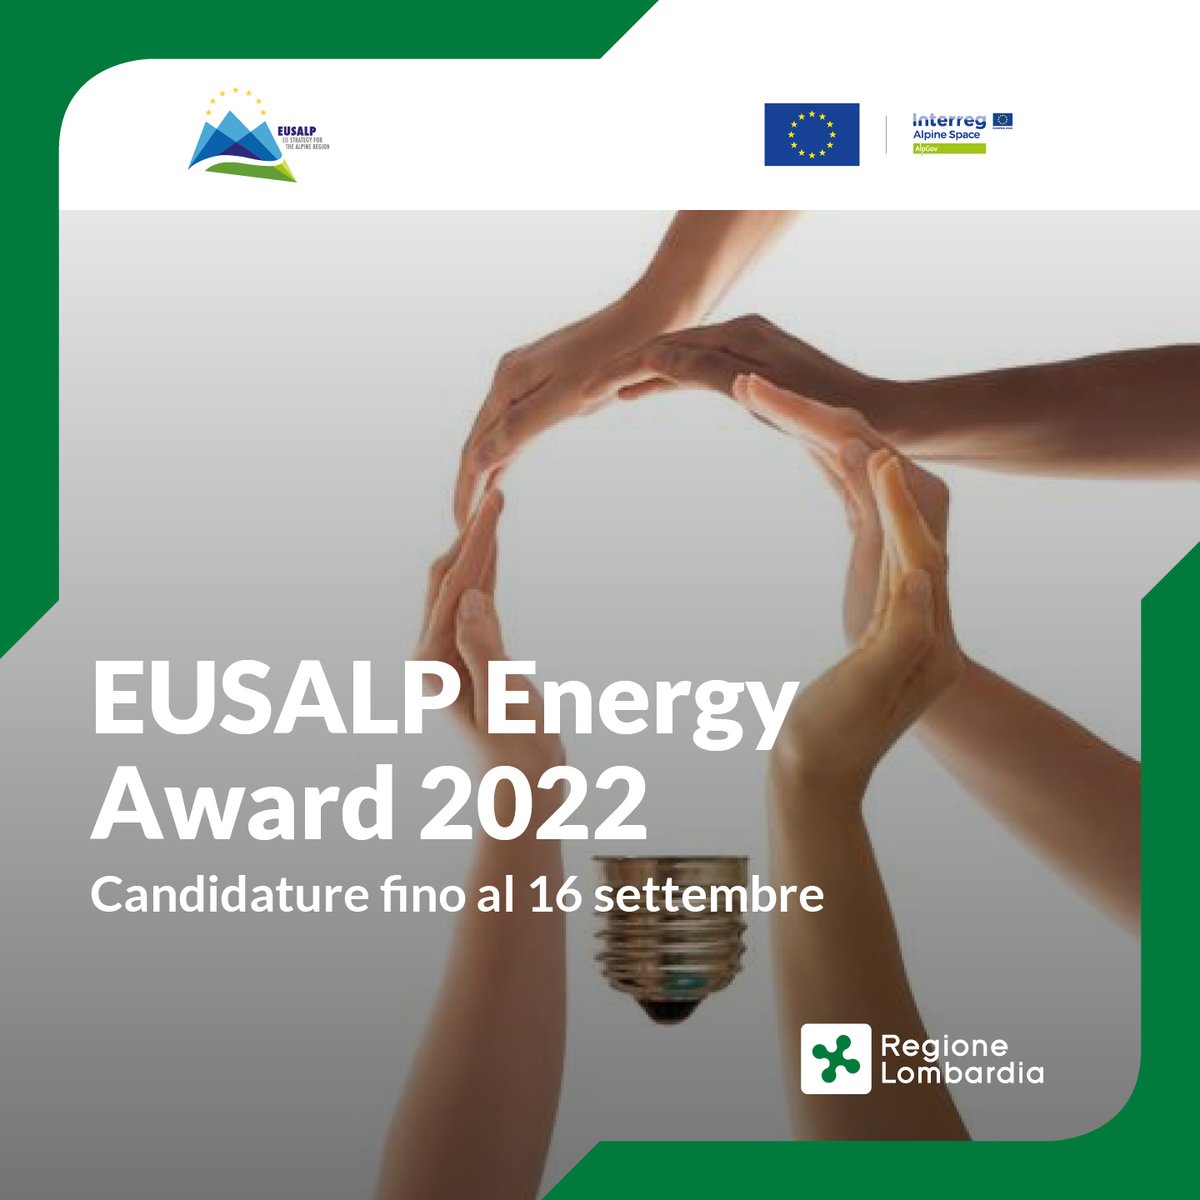 #EusalpEnergyAward
Partecipa entro il 16/9 alla prima edizione dell' @_Eusalp Energy Award. L'iniziativa premia progetti di istituzioni, startup, aziende ed enti di ricerca che si sono distinte nella promozione della #transizionenergetica:
reglomb.it/8SF950KGRKV